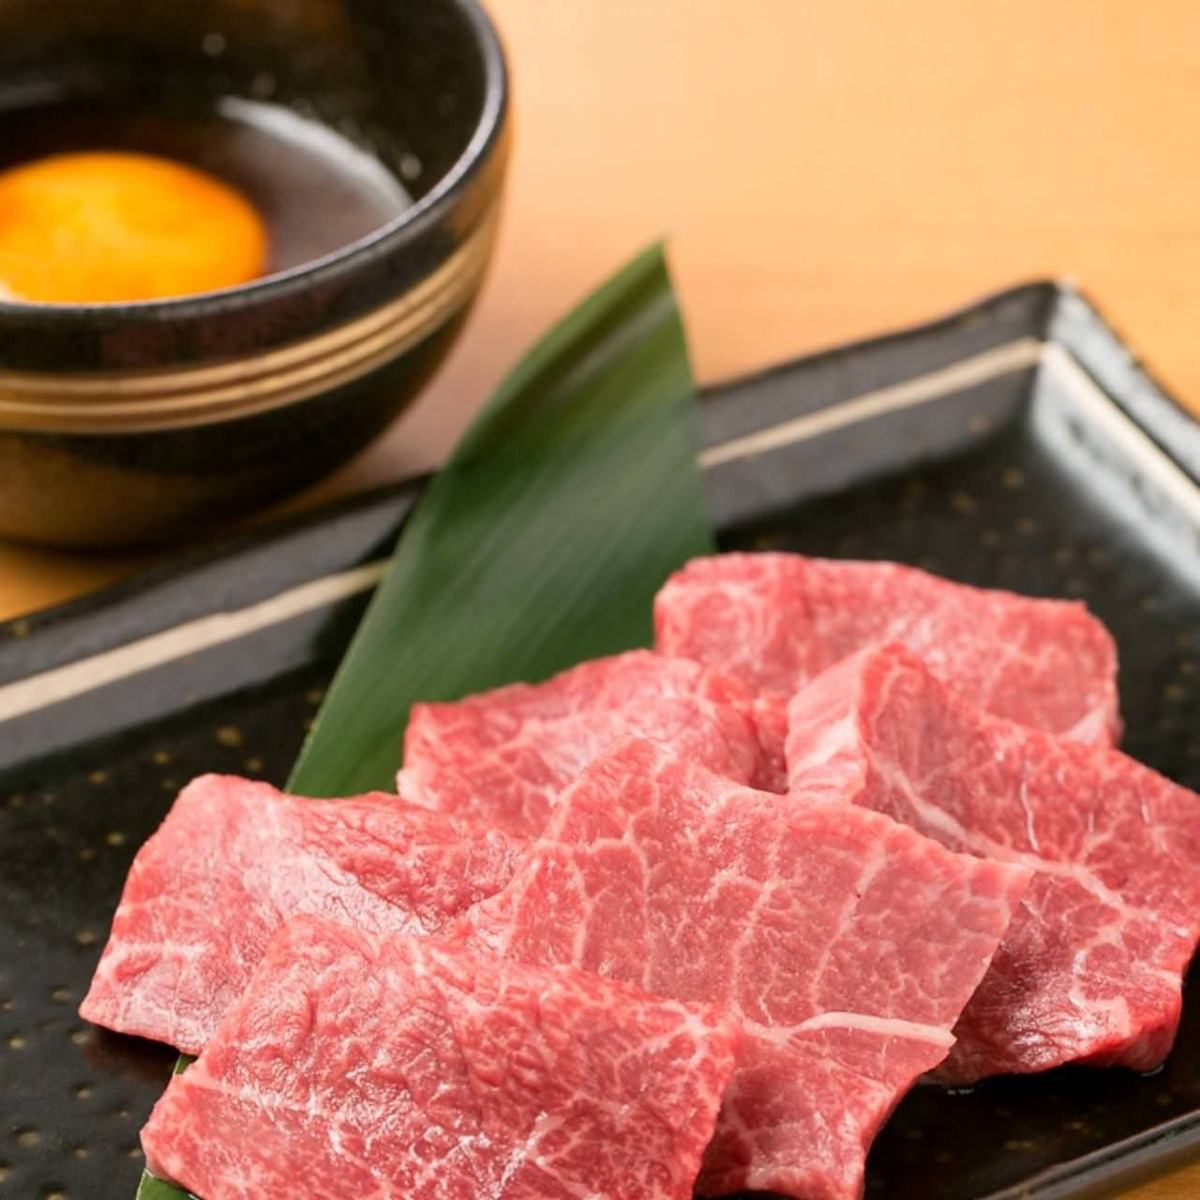 请在我们的商店享用幻影的日本牛肉“大崎牛肉”。